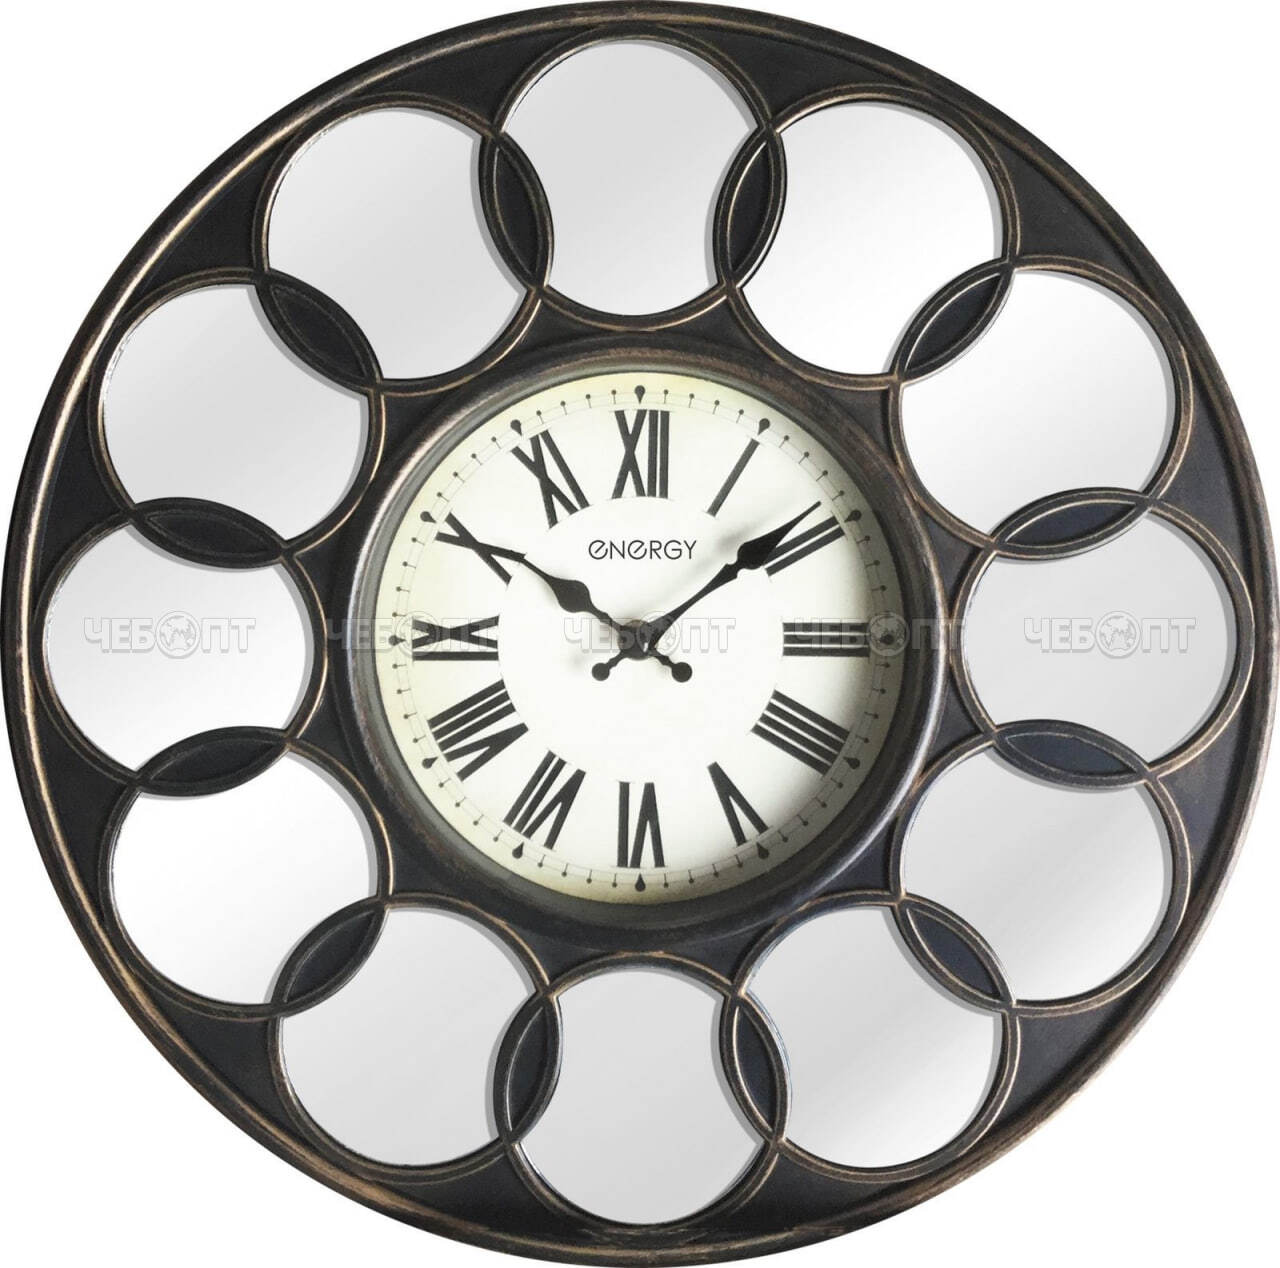 Часы настенные ENERGY EC-122 кварцевые, круглые d - 220 мм зеркальные вставки арт. 009496 [10] СКП. ЧЕБОПТ.